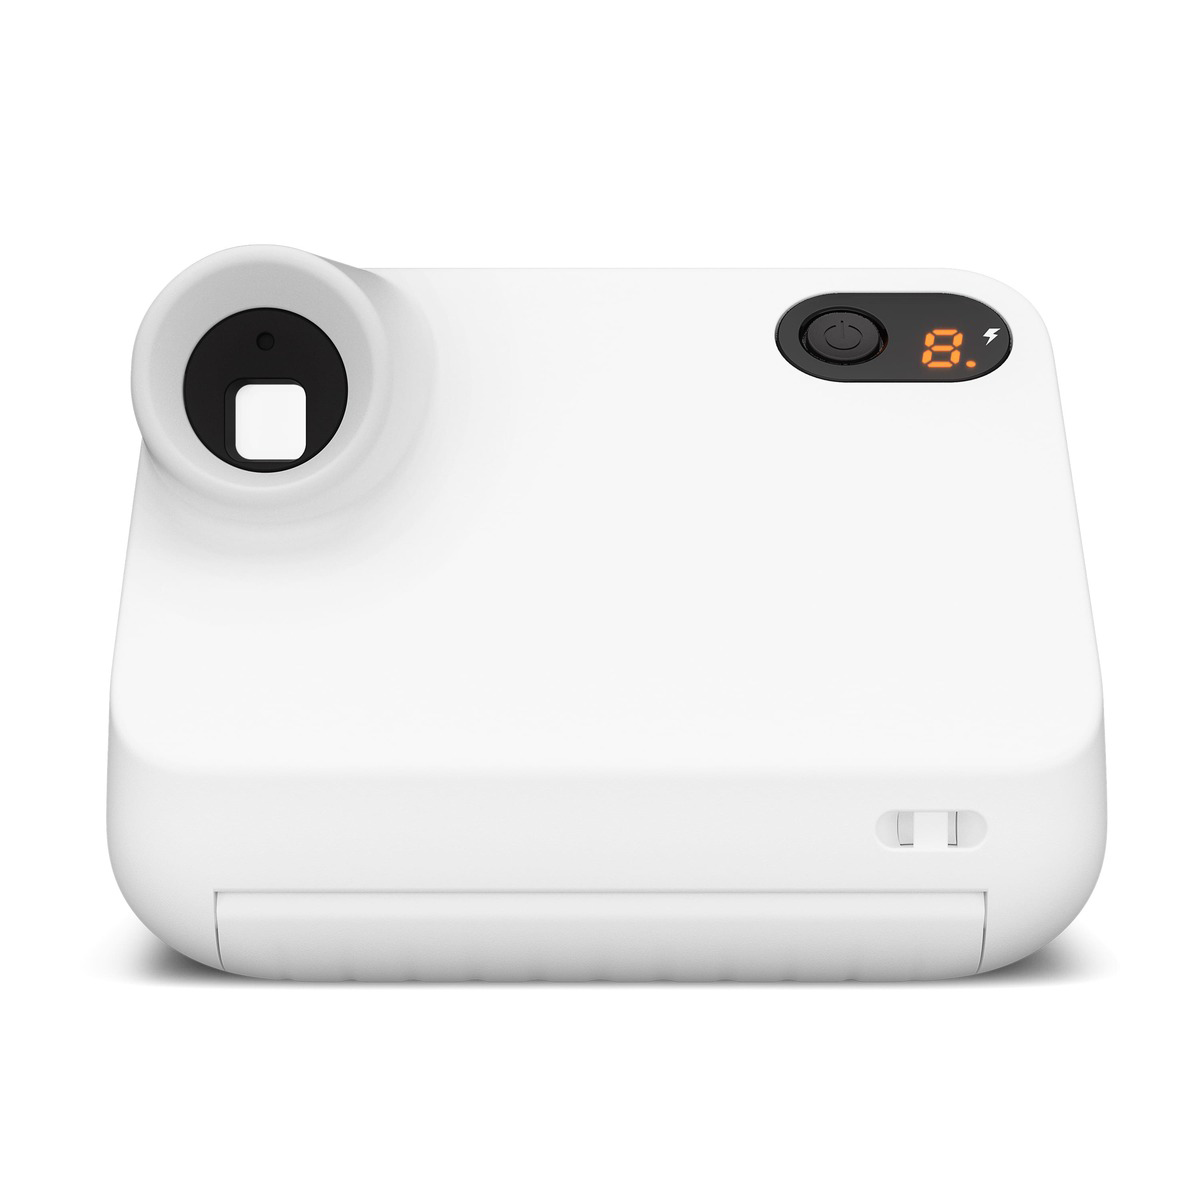 Polaroid Go : l'appareil photo instantané le plus compact au monde